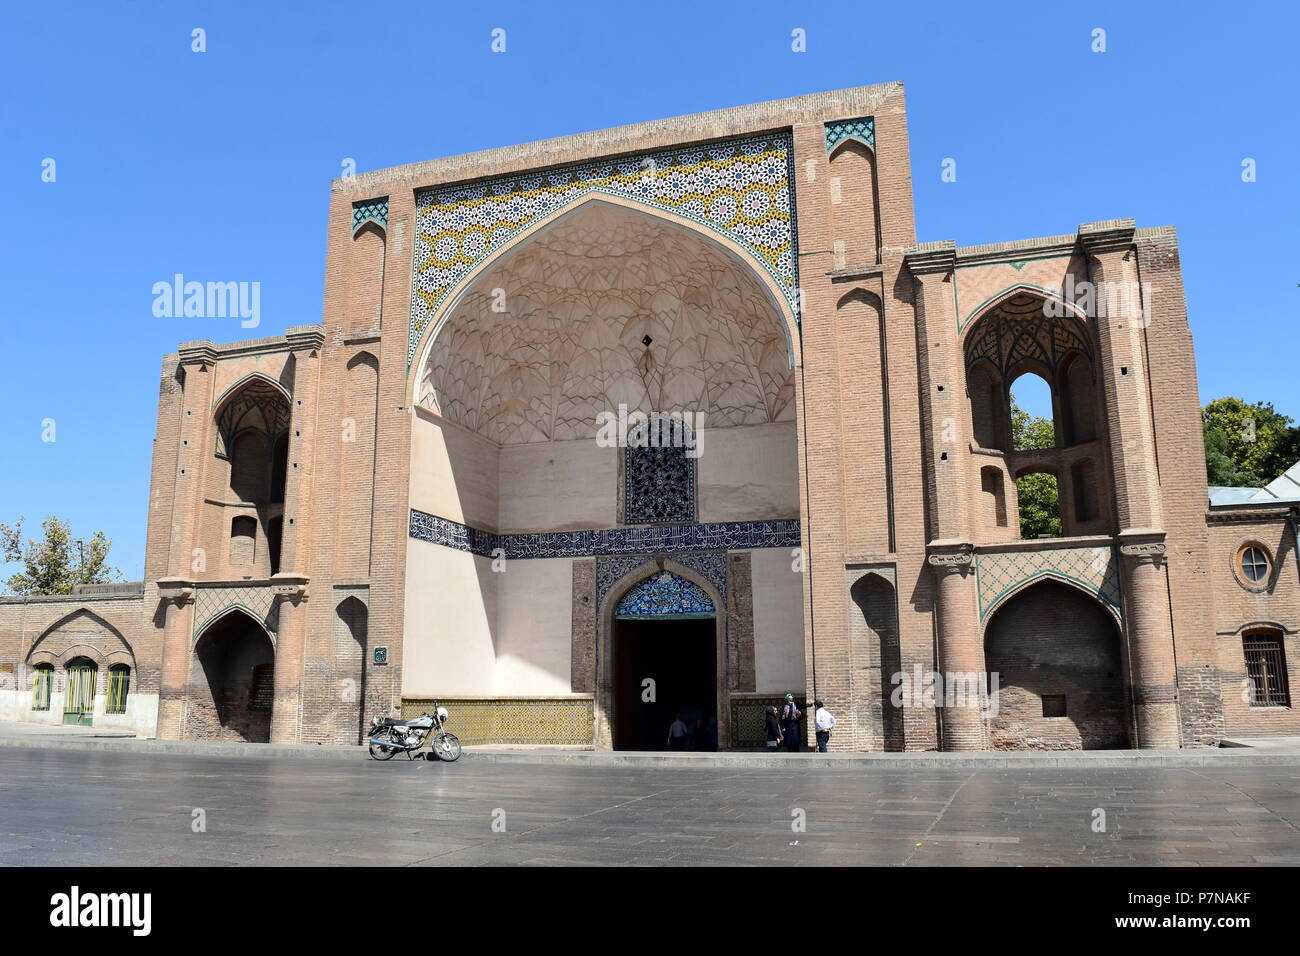 Iran historical gate iwan: beautiful Iranian and Islamic architecture at Qazvin, Iran Stock Photo